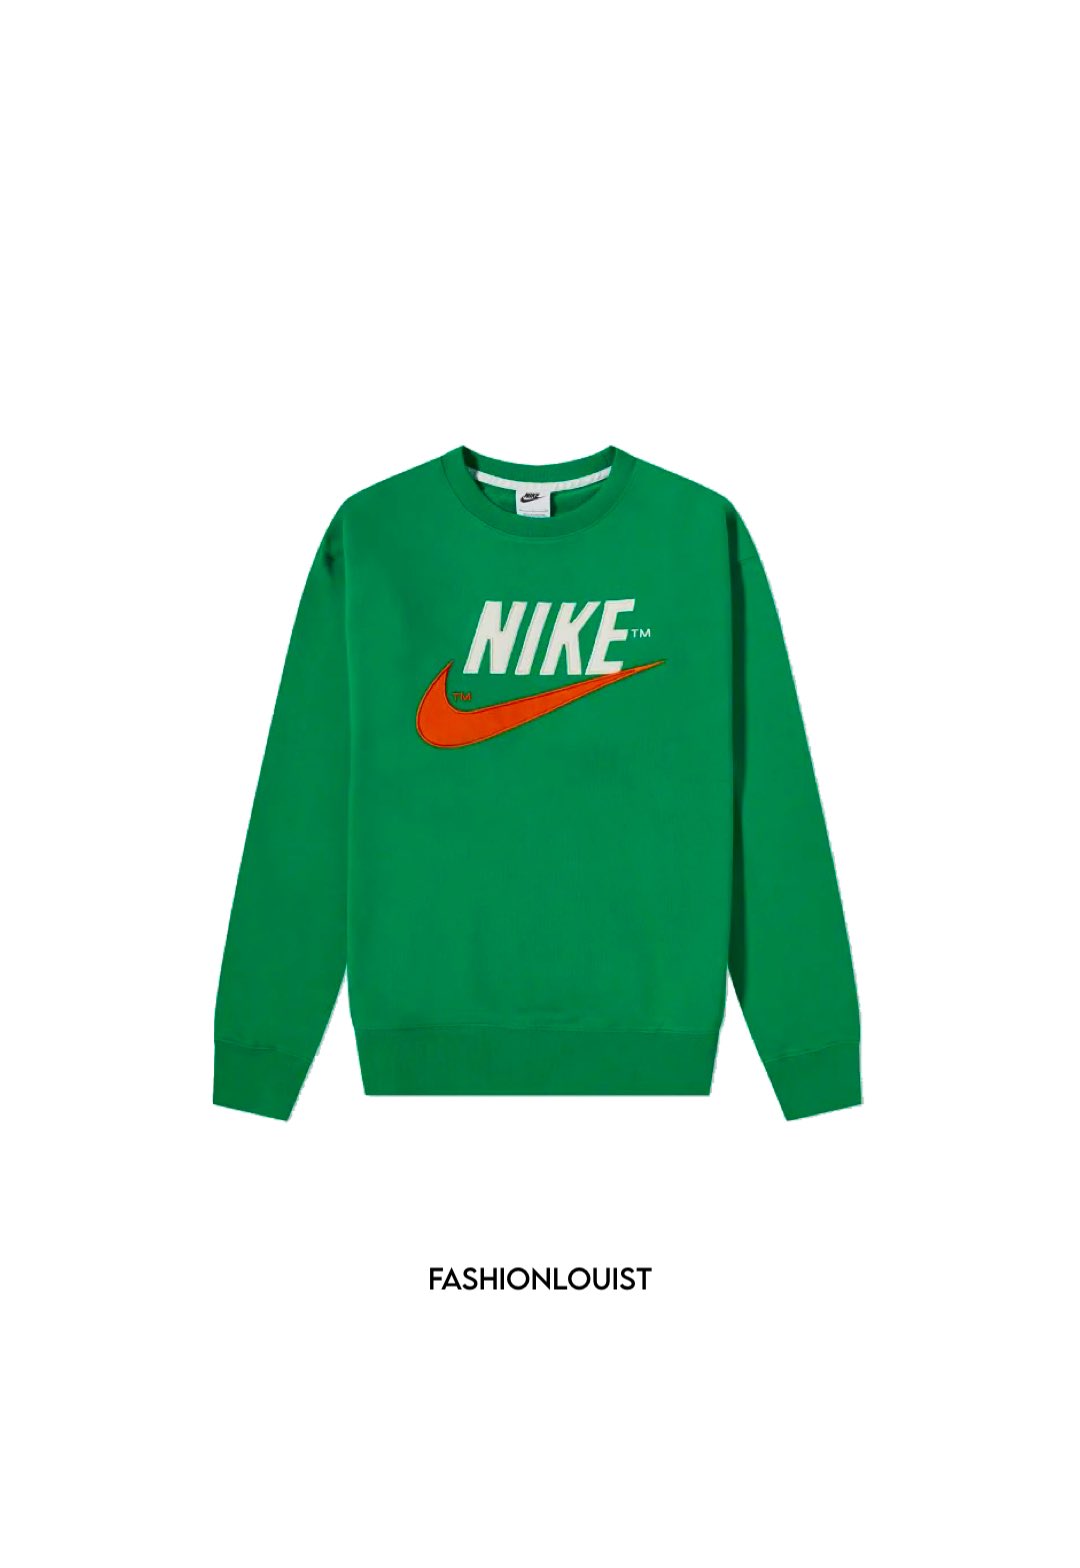 Louis Tomlinson Fashion on X: Louis wore this Nike Sportswear